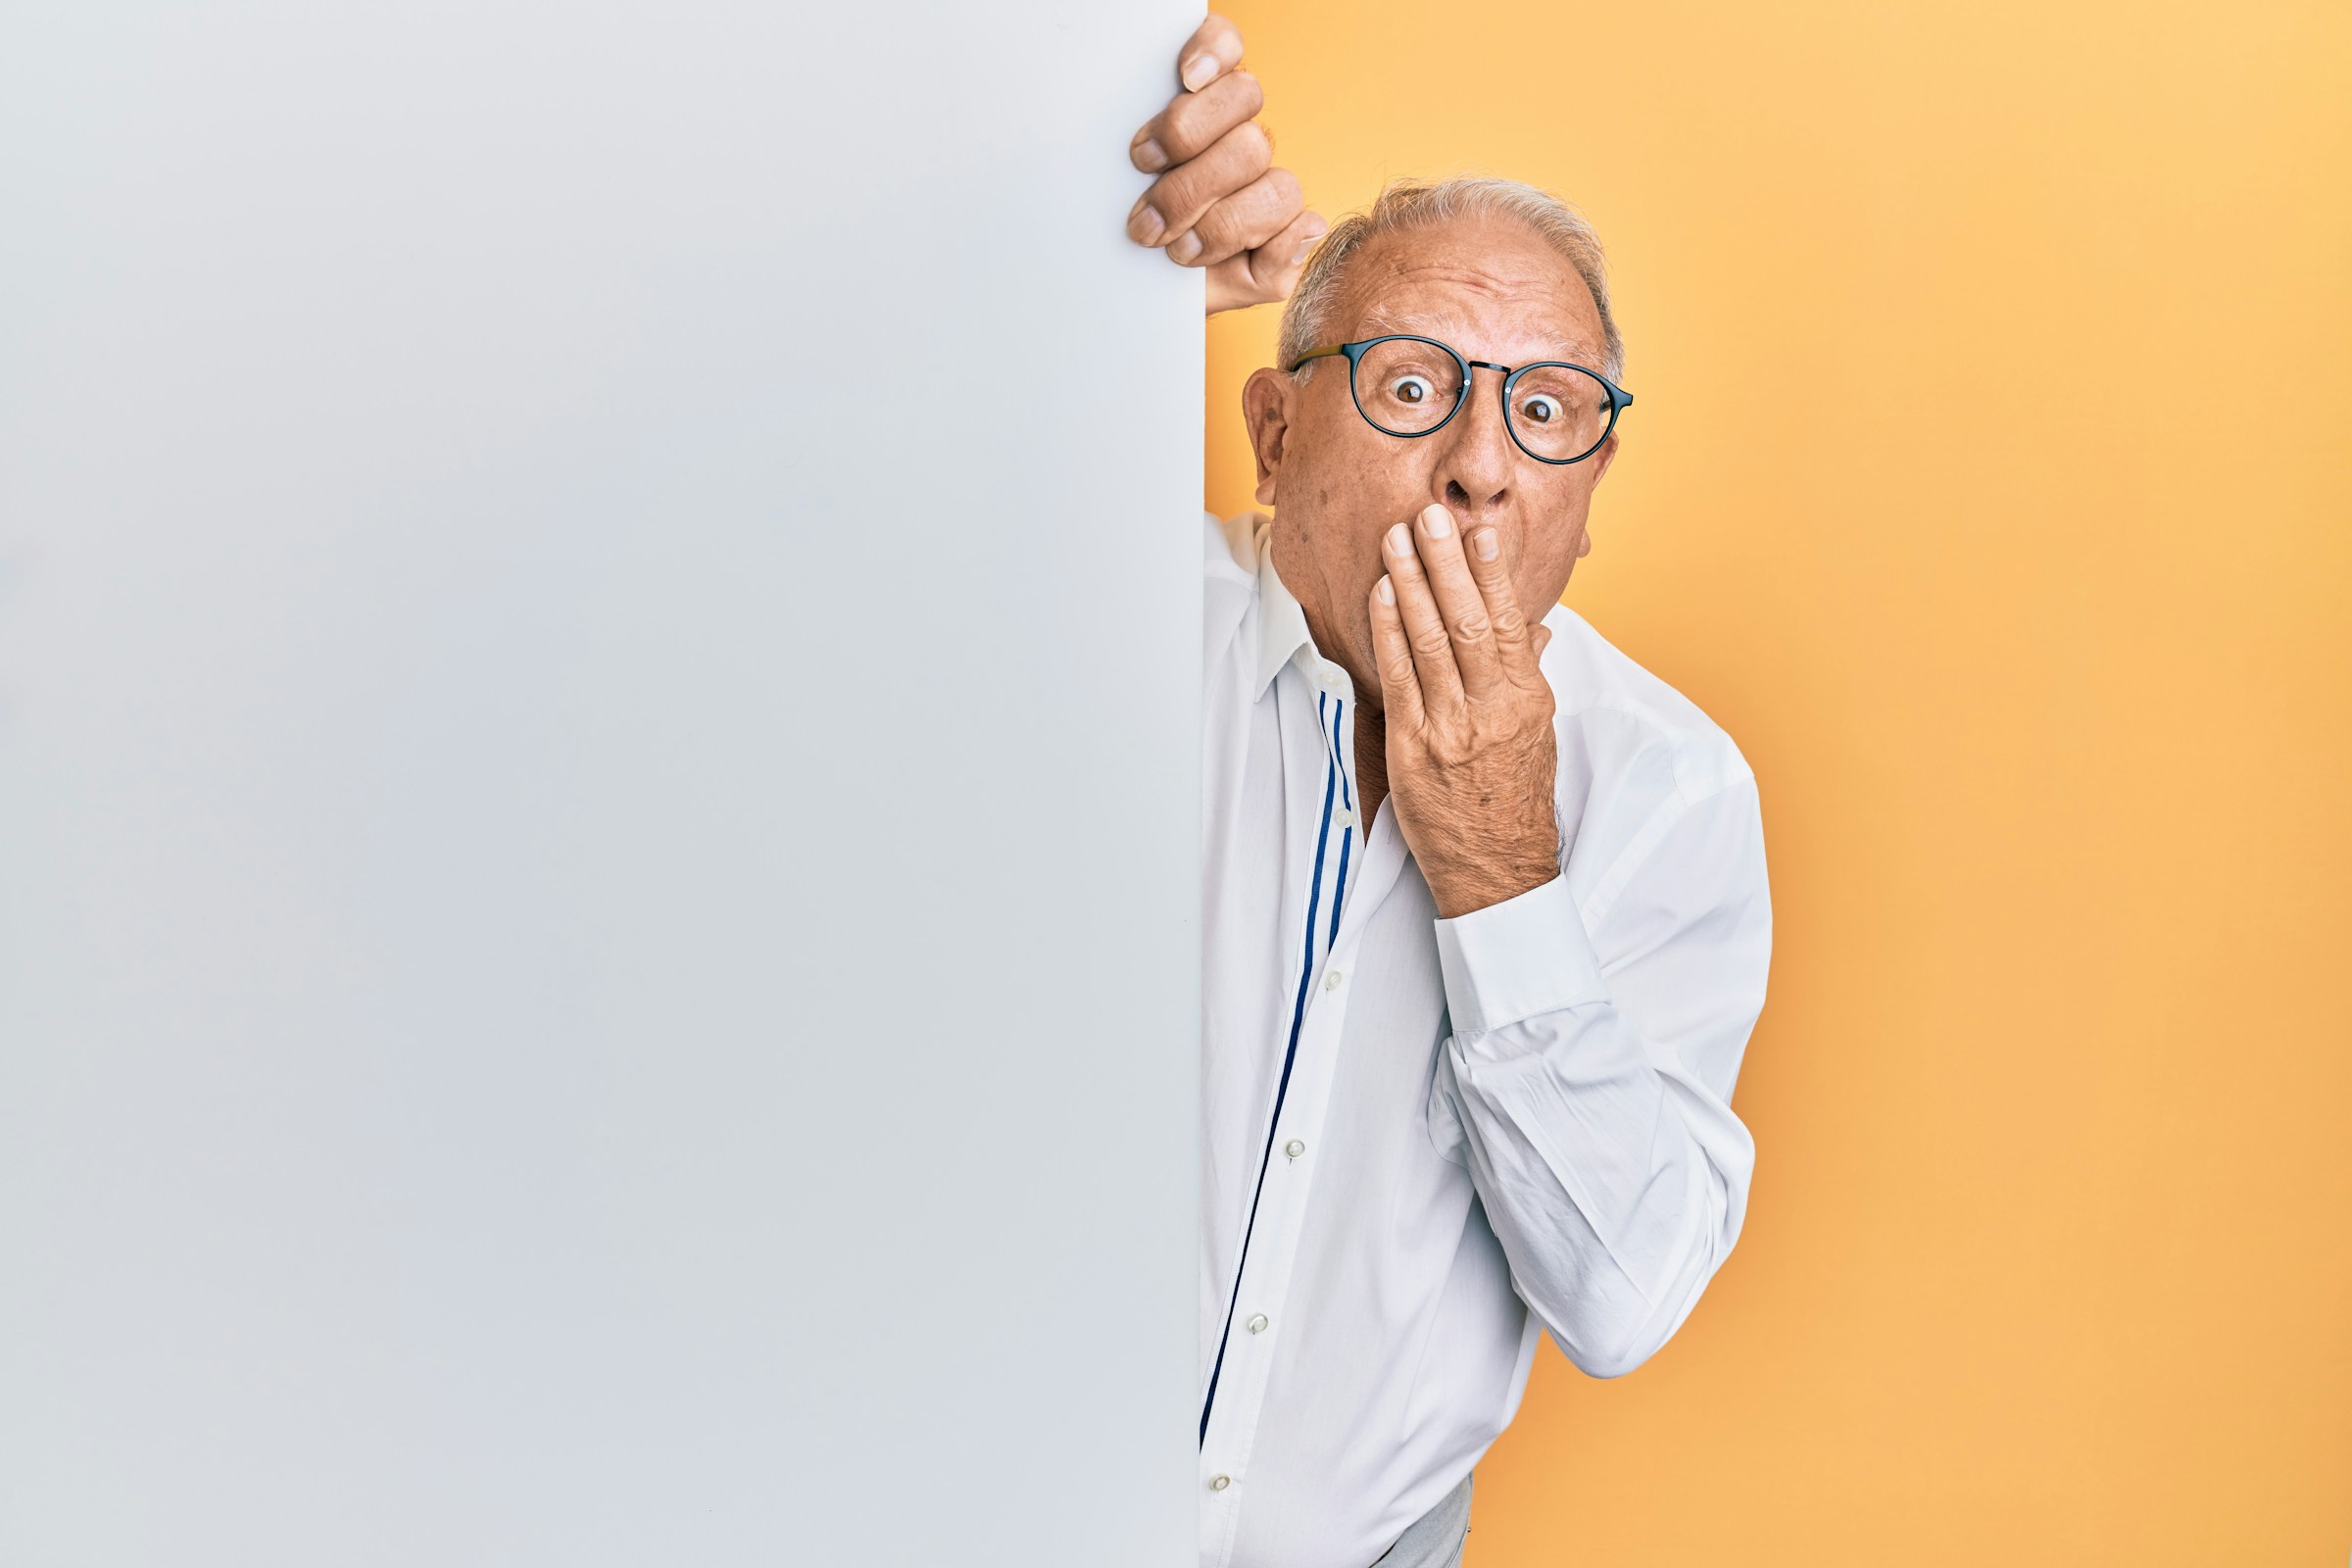 An older man blocking his mouth | Source: Unsplash